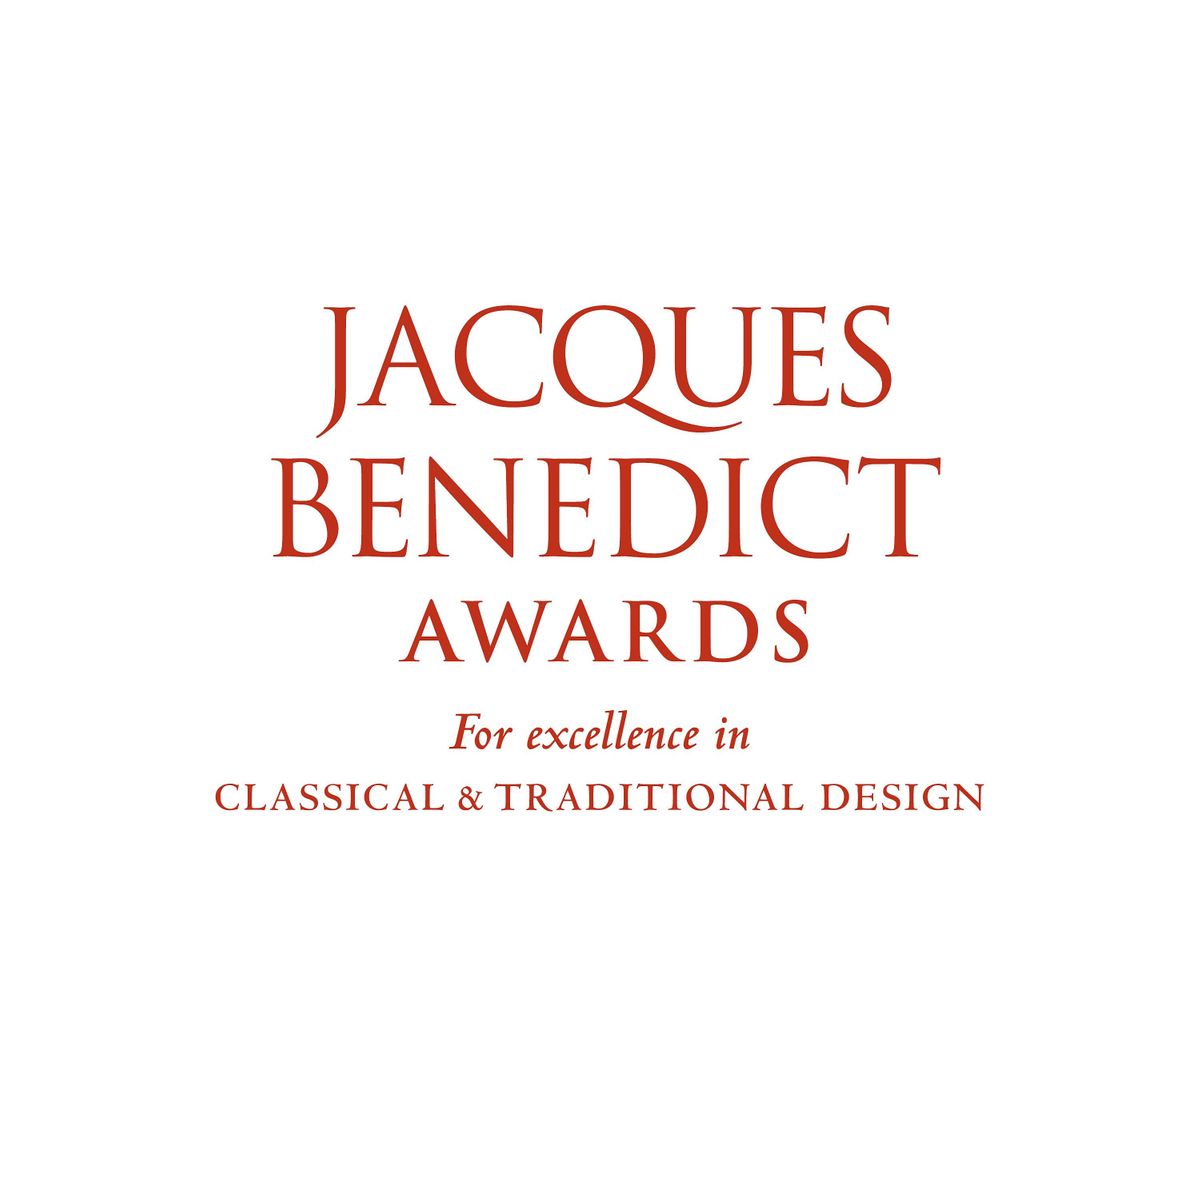 Jacques Benedict Awards